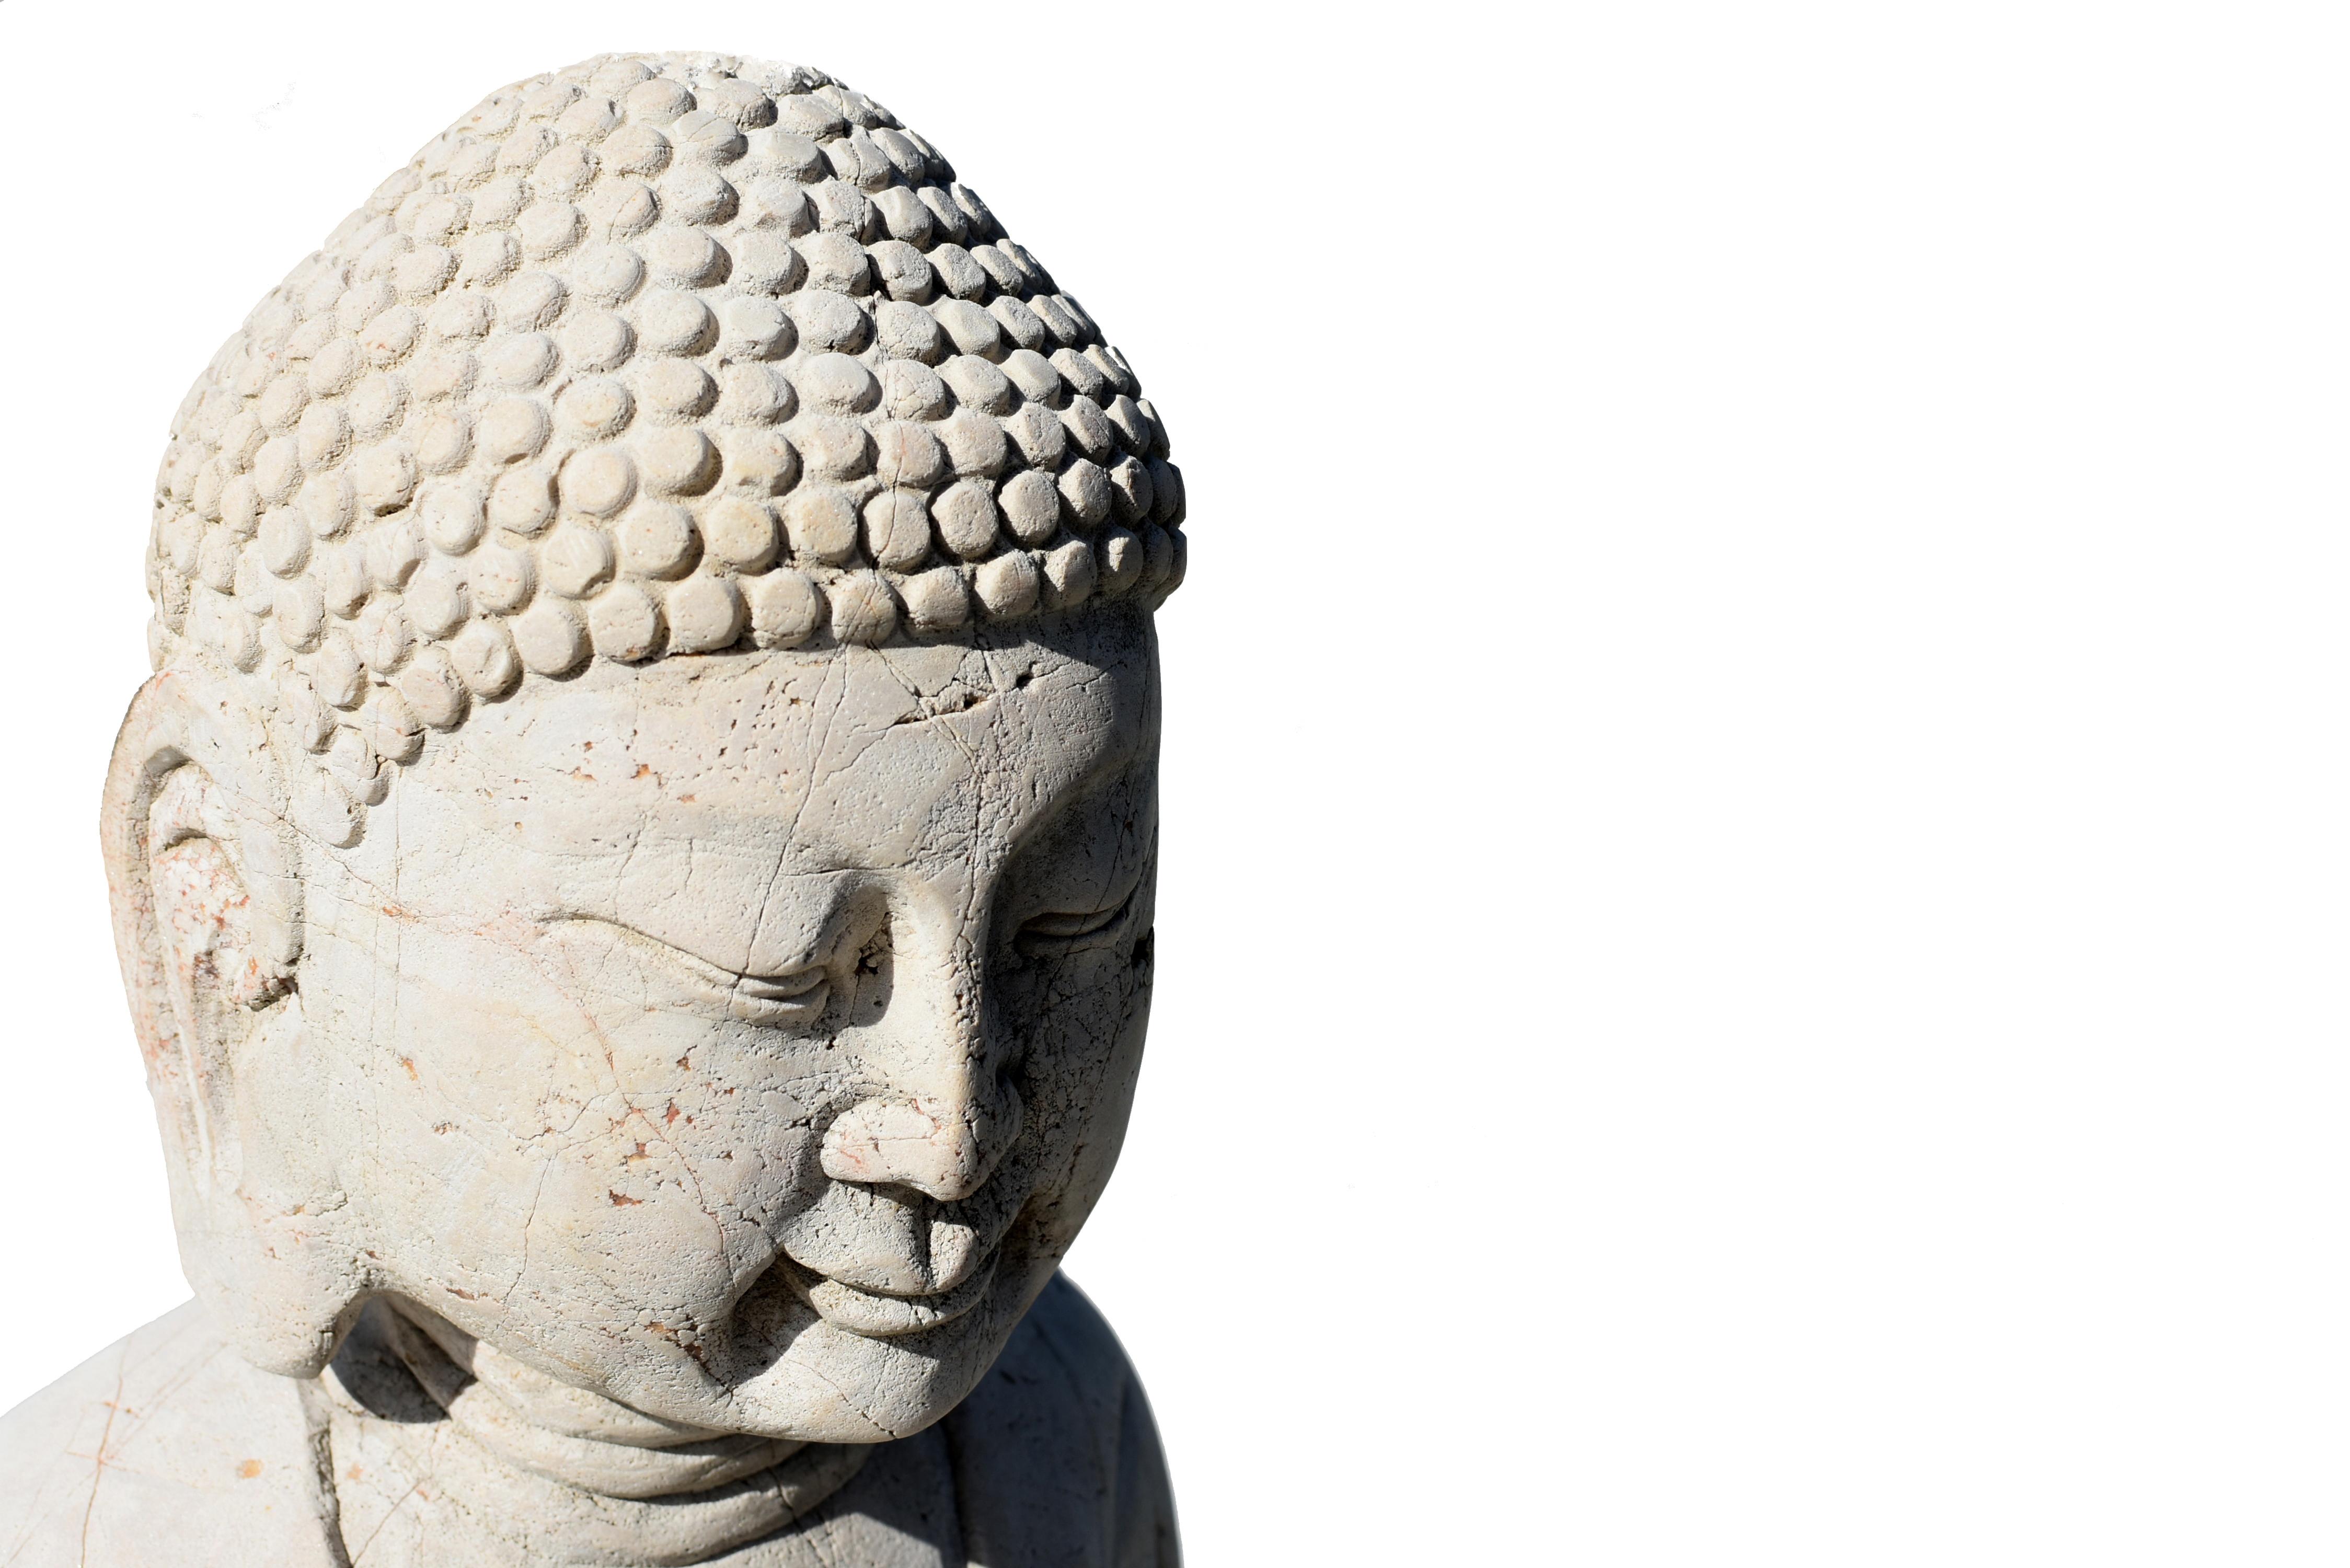 Eine schöne handgeschnitzte Steinstatue von Buddha Amitabha. Buddha sitzt in Dhyanasana und trägt ein elegantes Gewand, das über seinen Körper drapiert und um seine Knöchel gerafft ist. Fein gezeichnetes Gesicht mit langen, schlanken Augen und